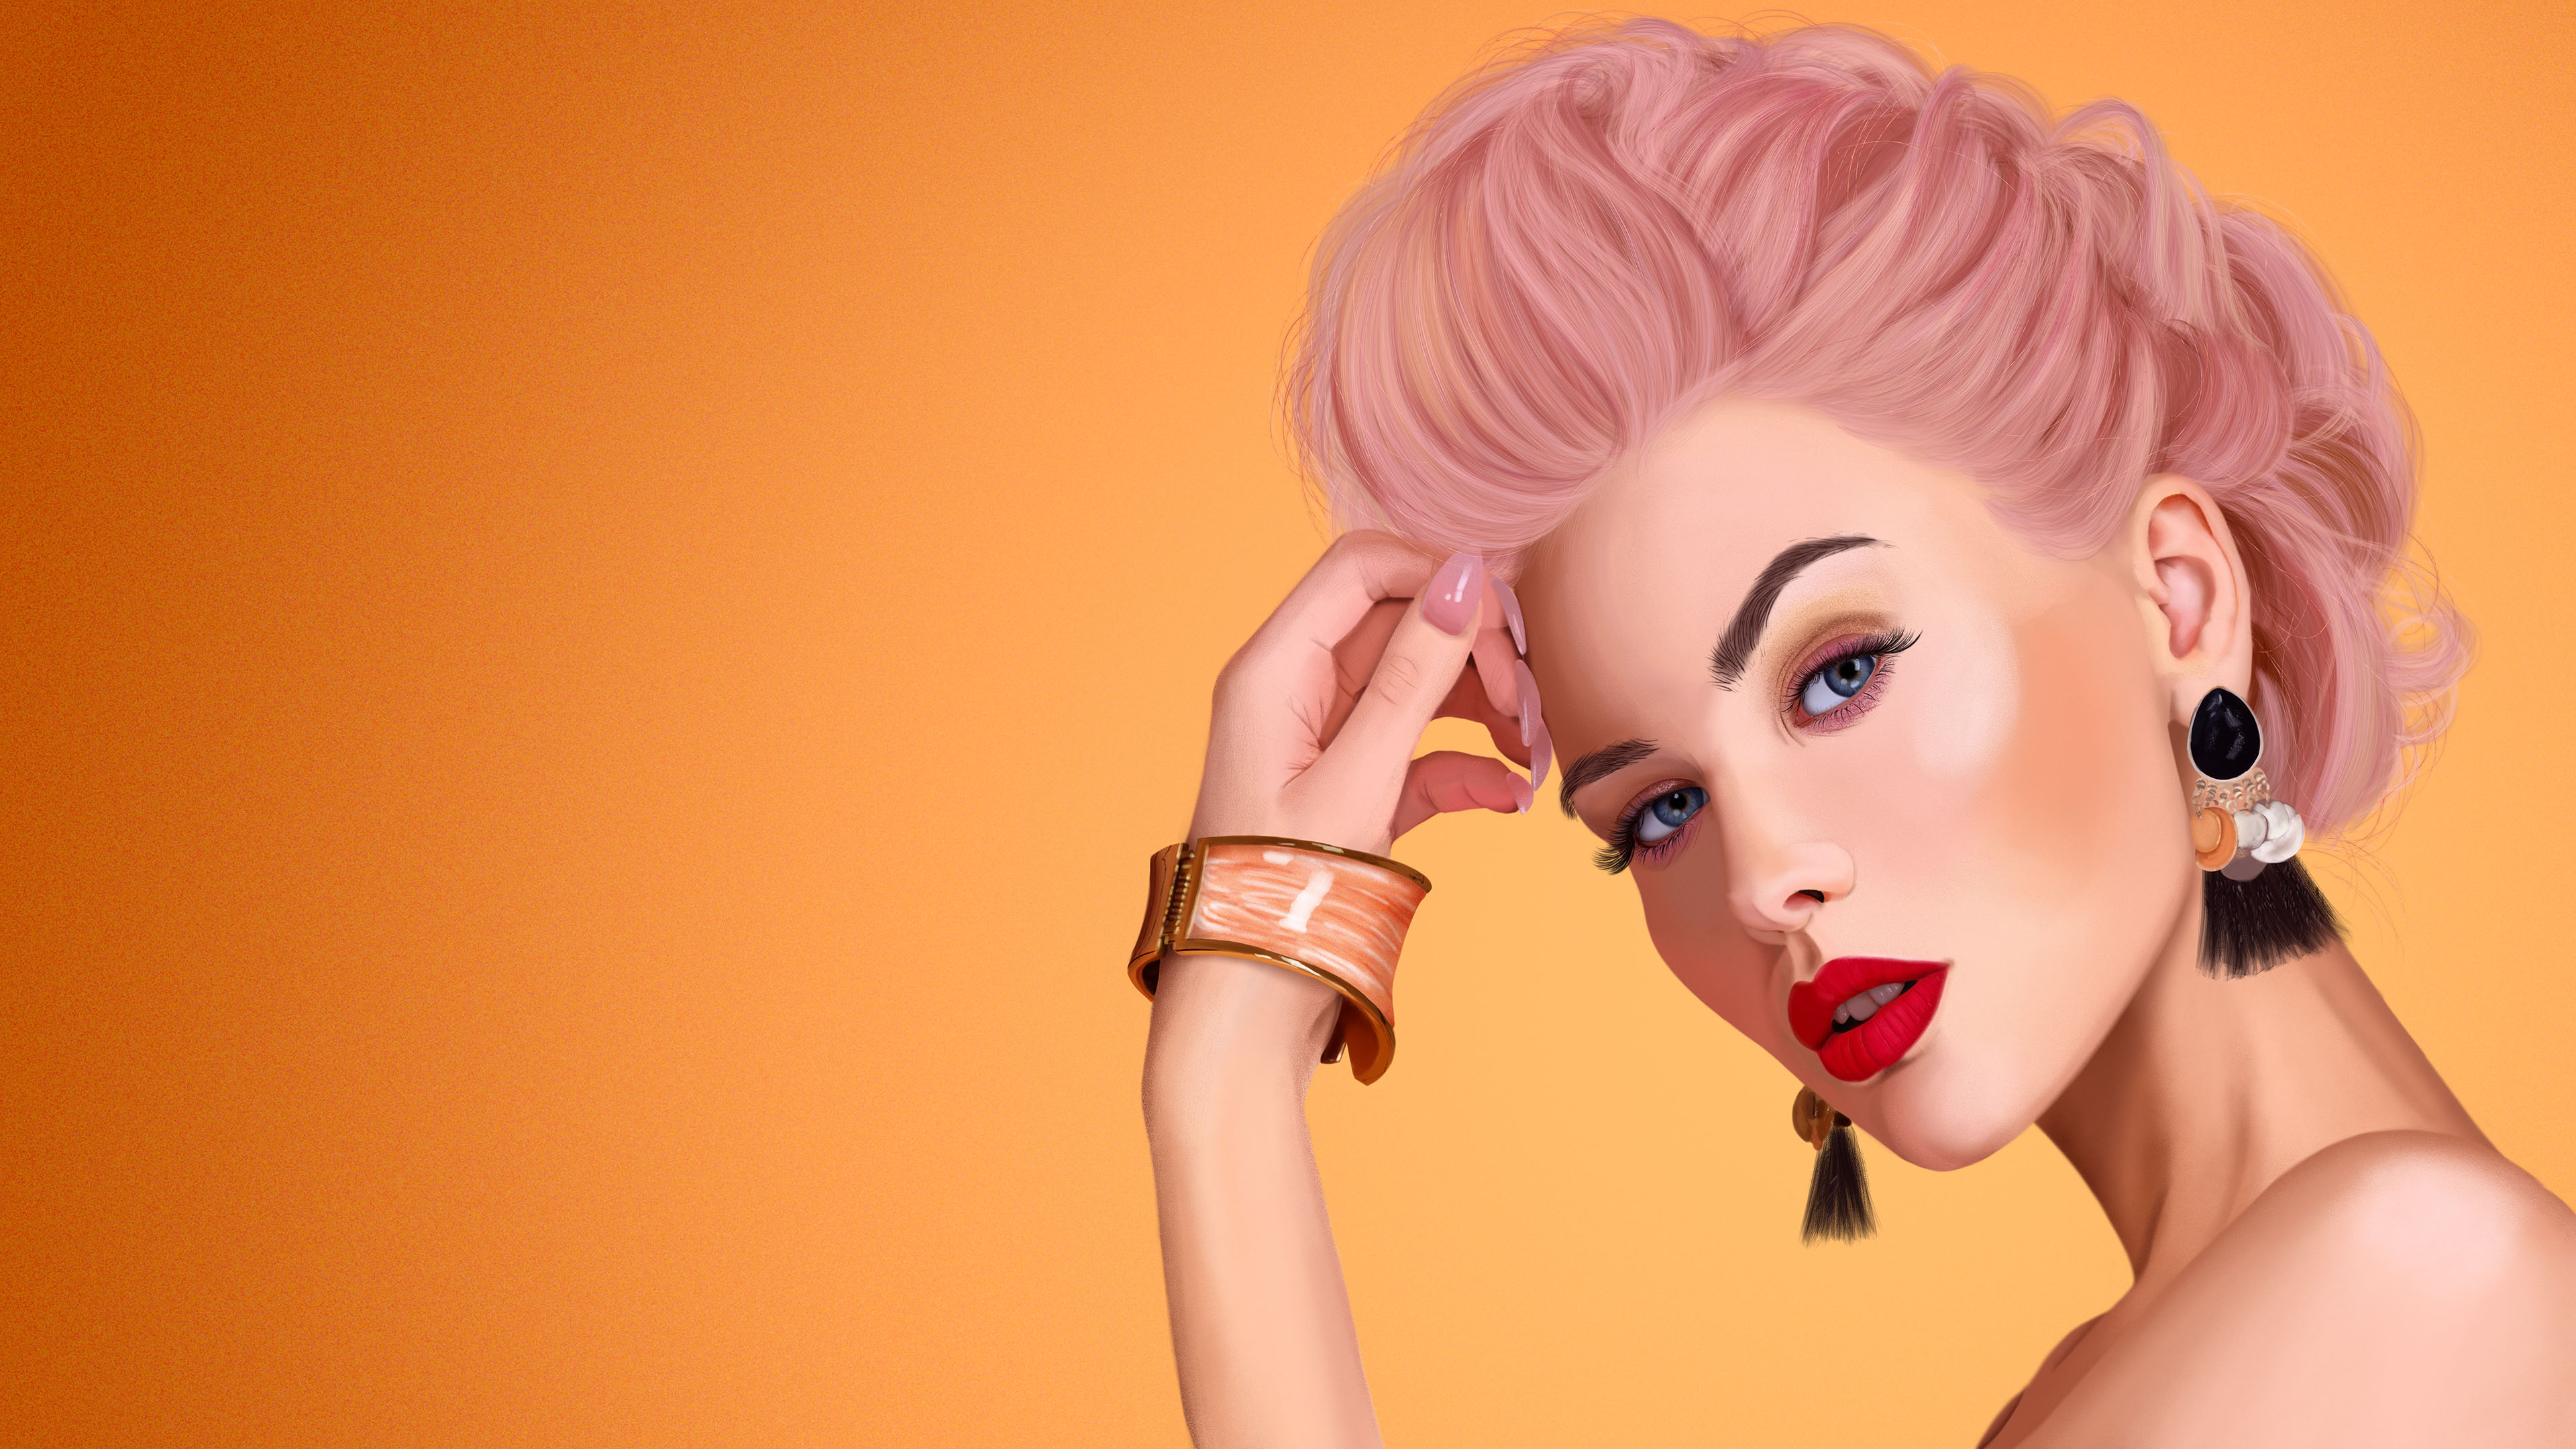 Digital Art Women Pink Hair Red Lipstick 3840x2160